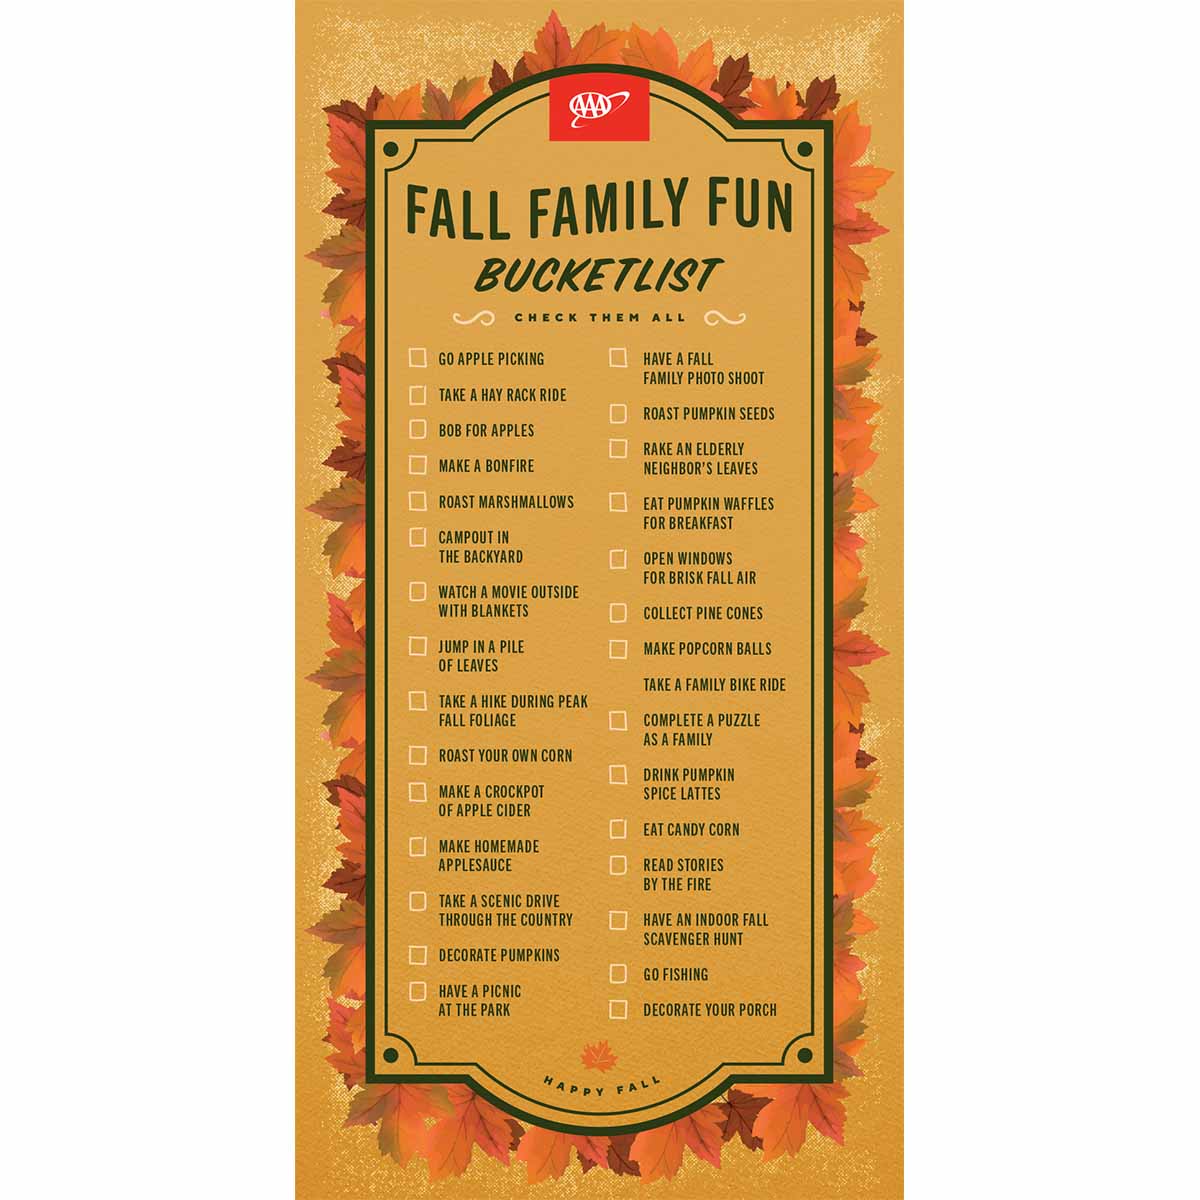 Fall family fun